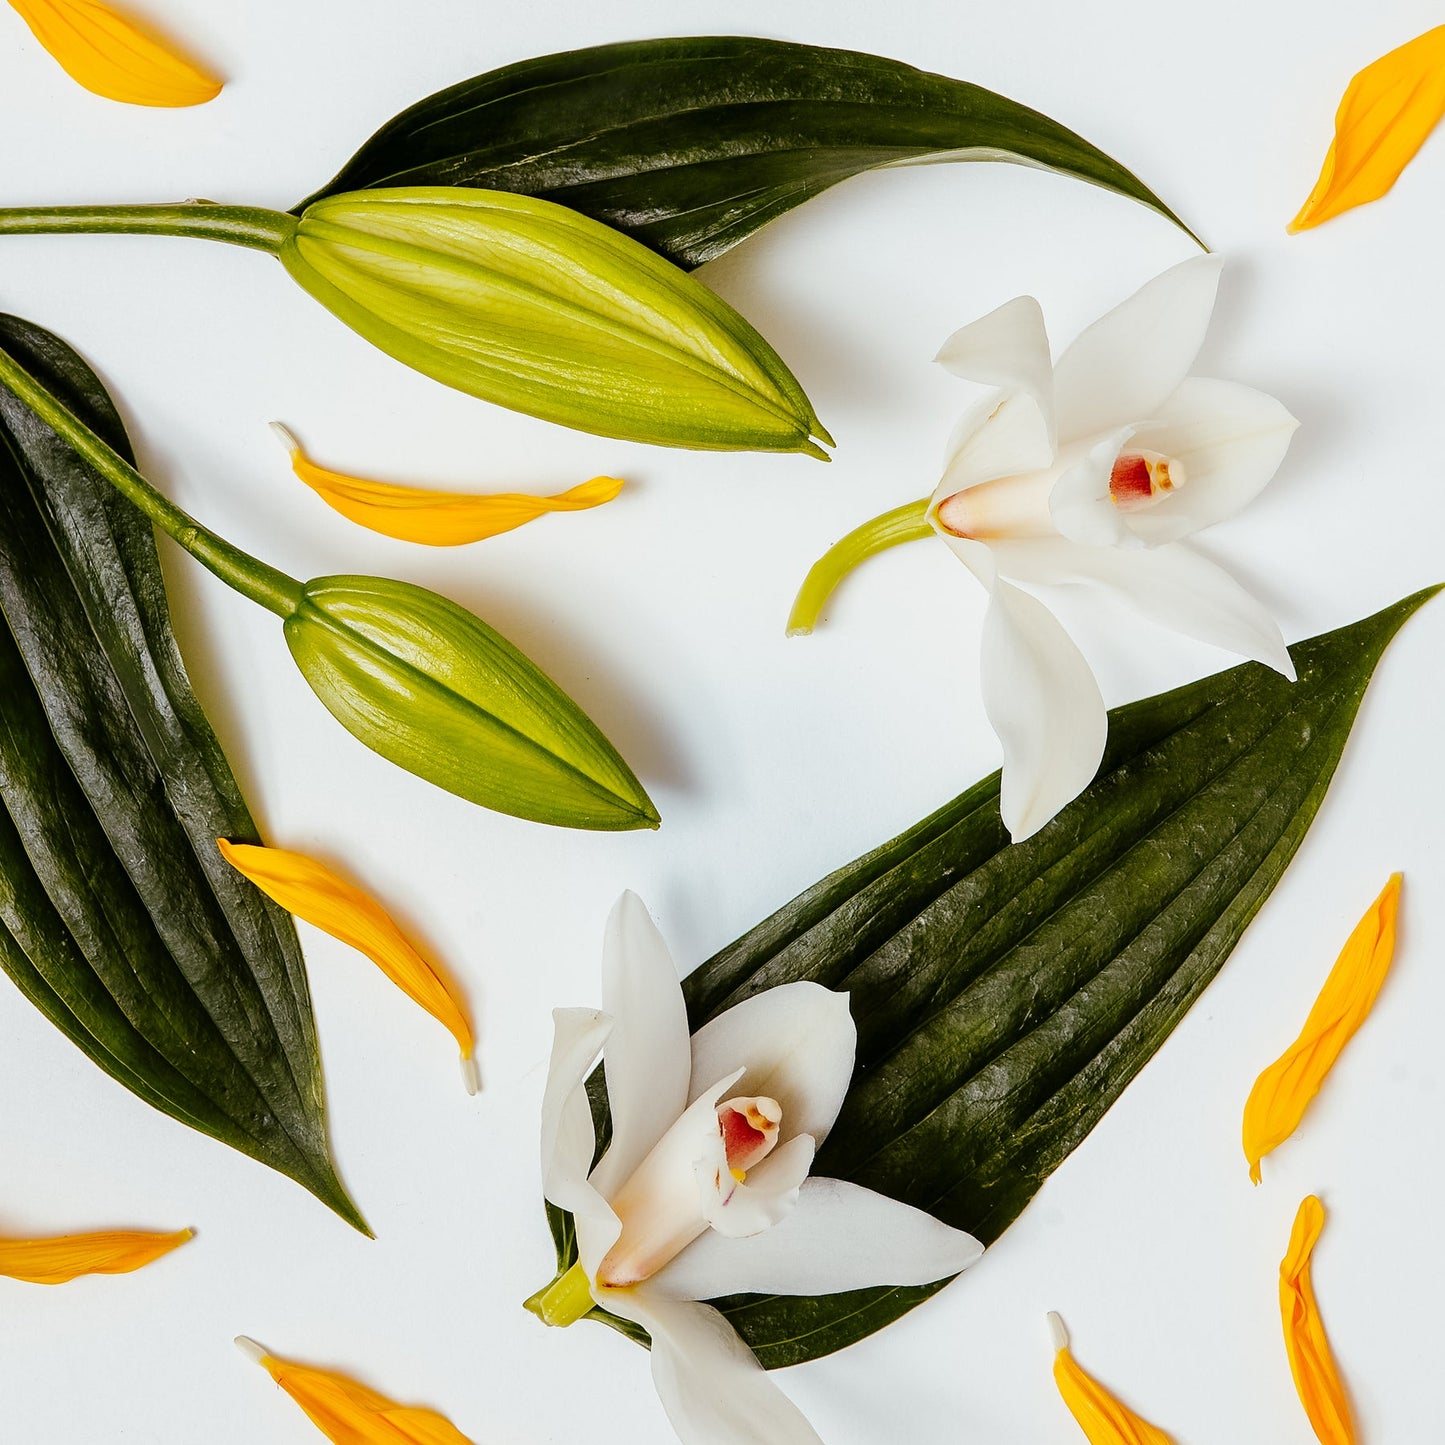 Brooke & Shoals Candle - White Lily and Ylang Ylang